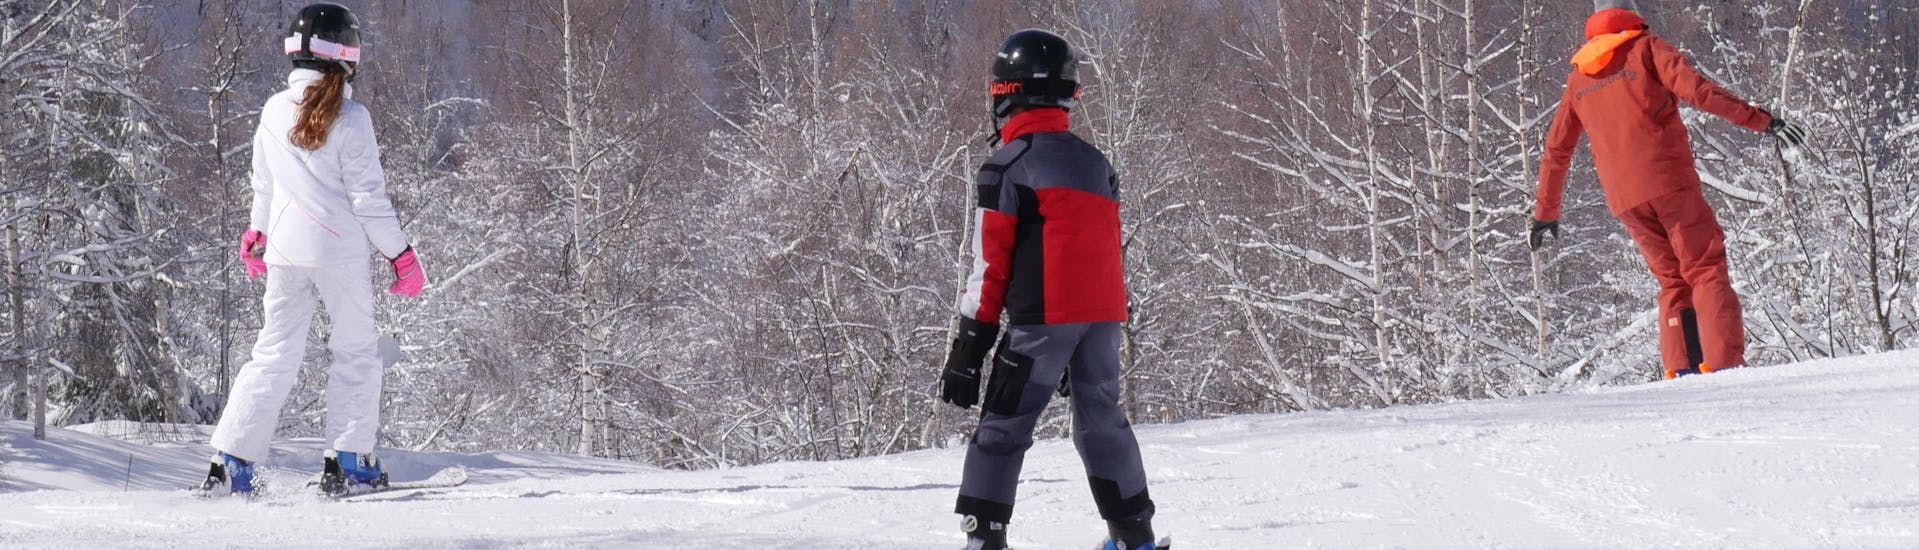 Clases particulares de esquí para niños.